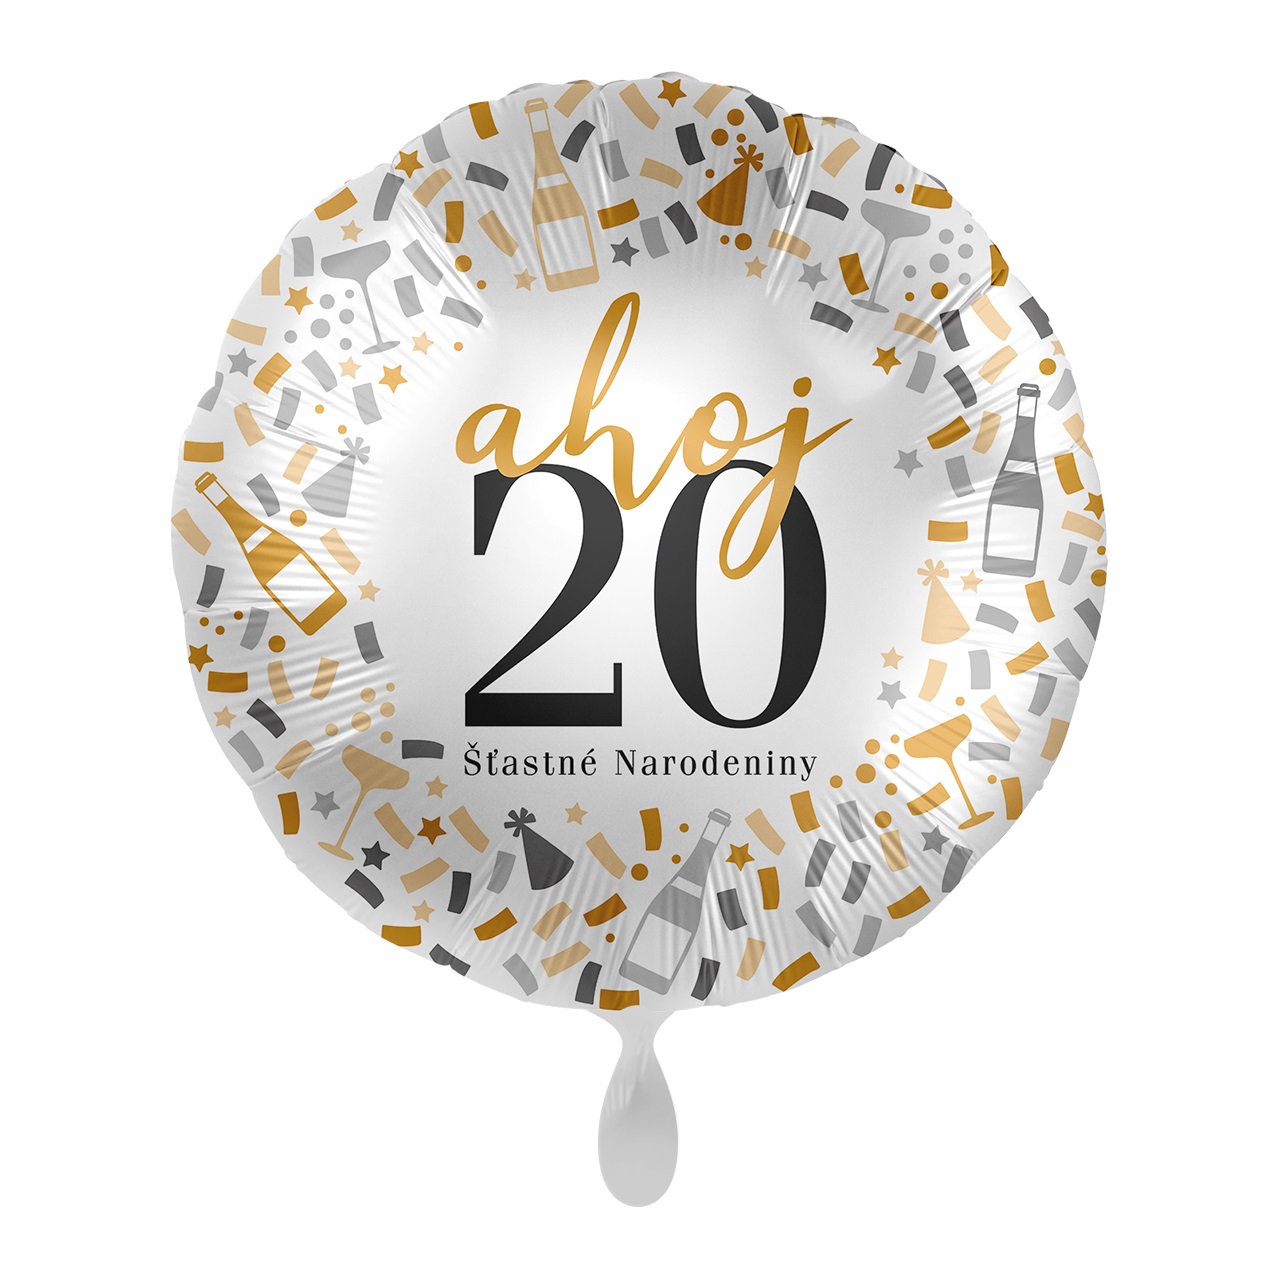 Premioloon Fóliový balón - Ahoj 20 Šťastné narodeniny